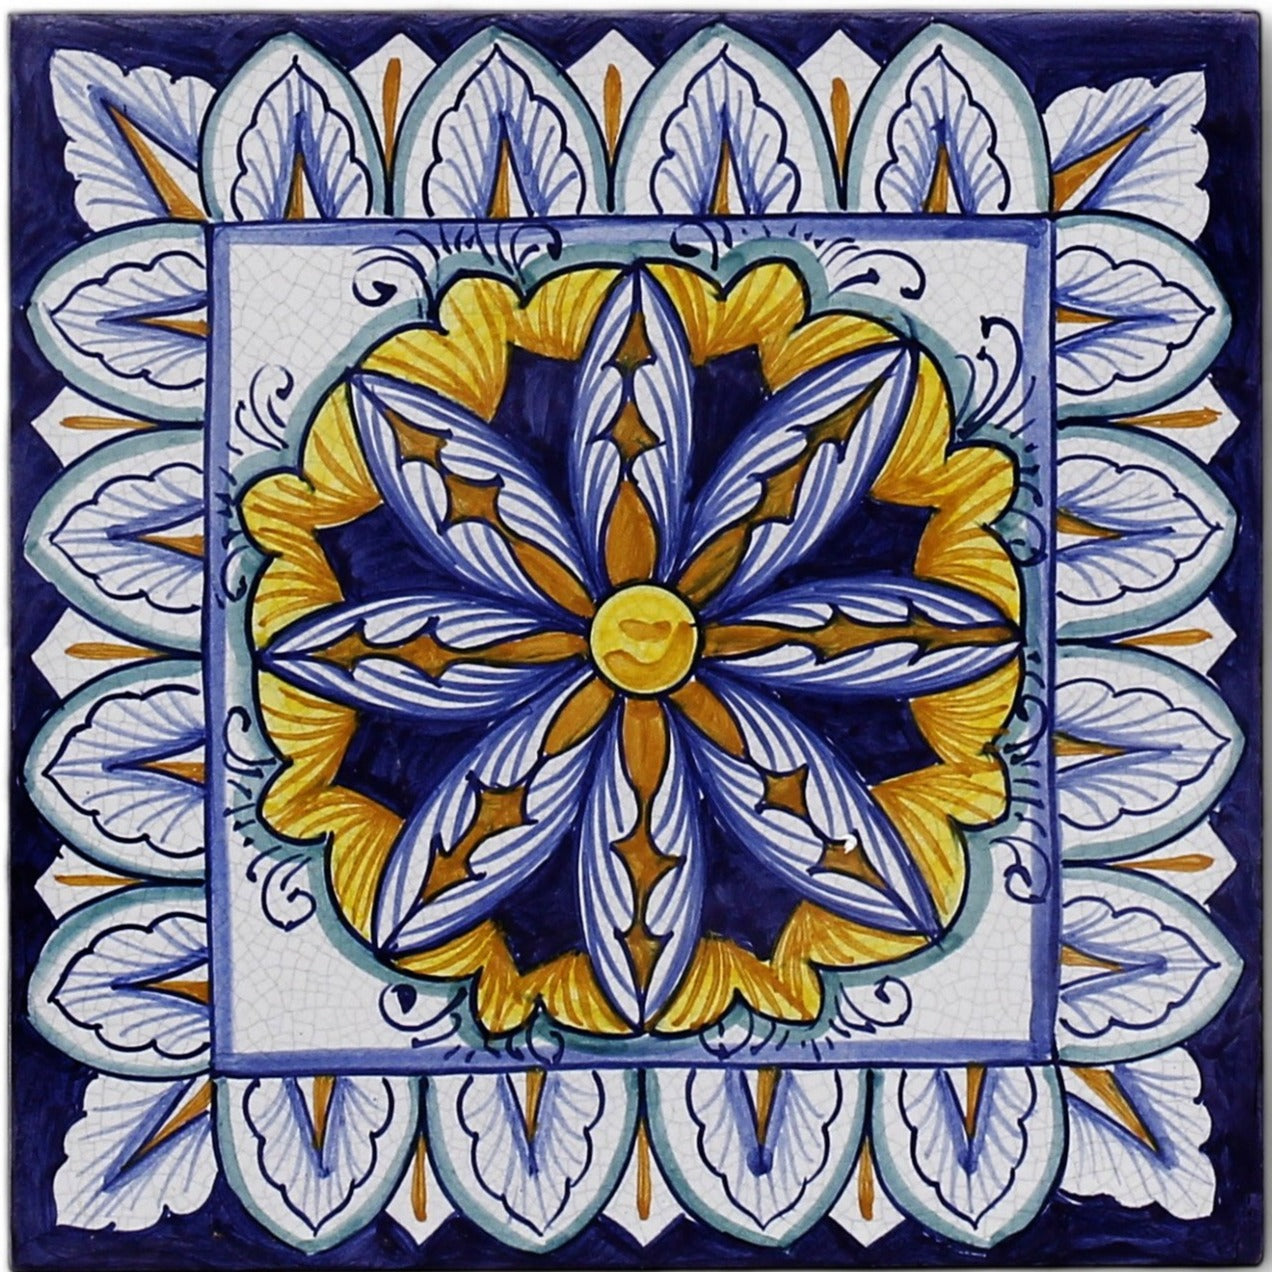 ANTICA DERUTA: Hand Painted Ceramic Authentic Deruta Tile